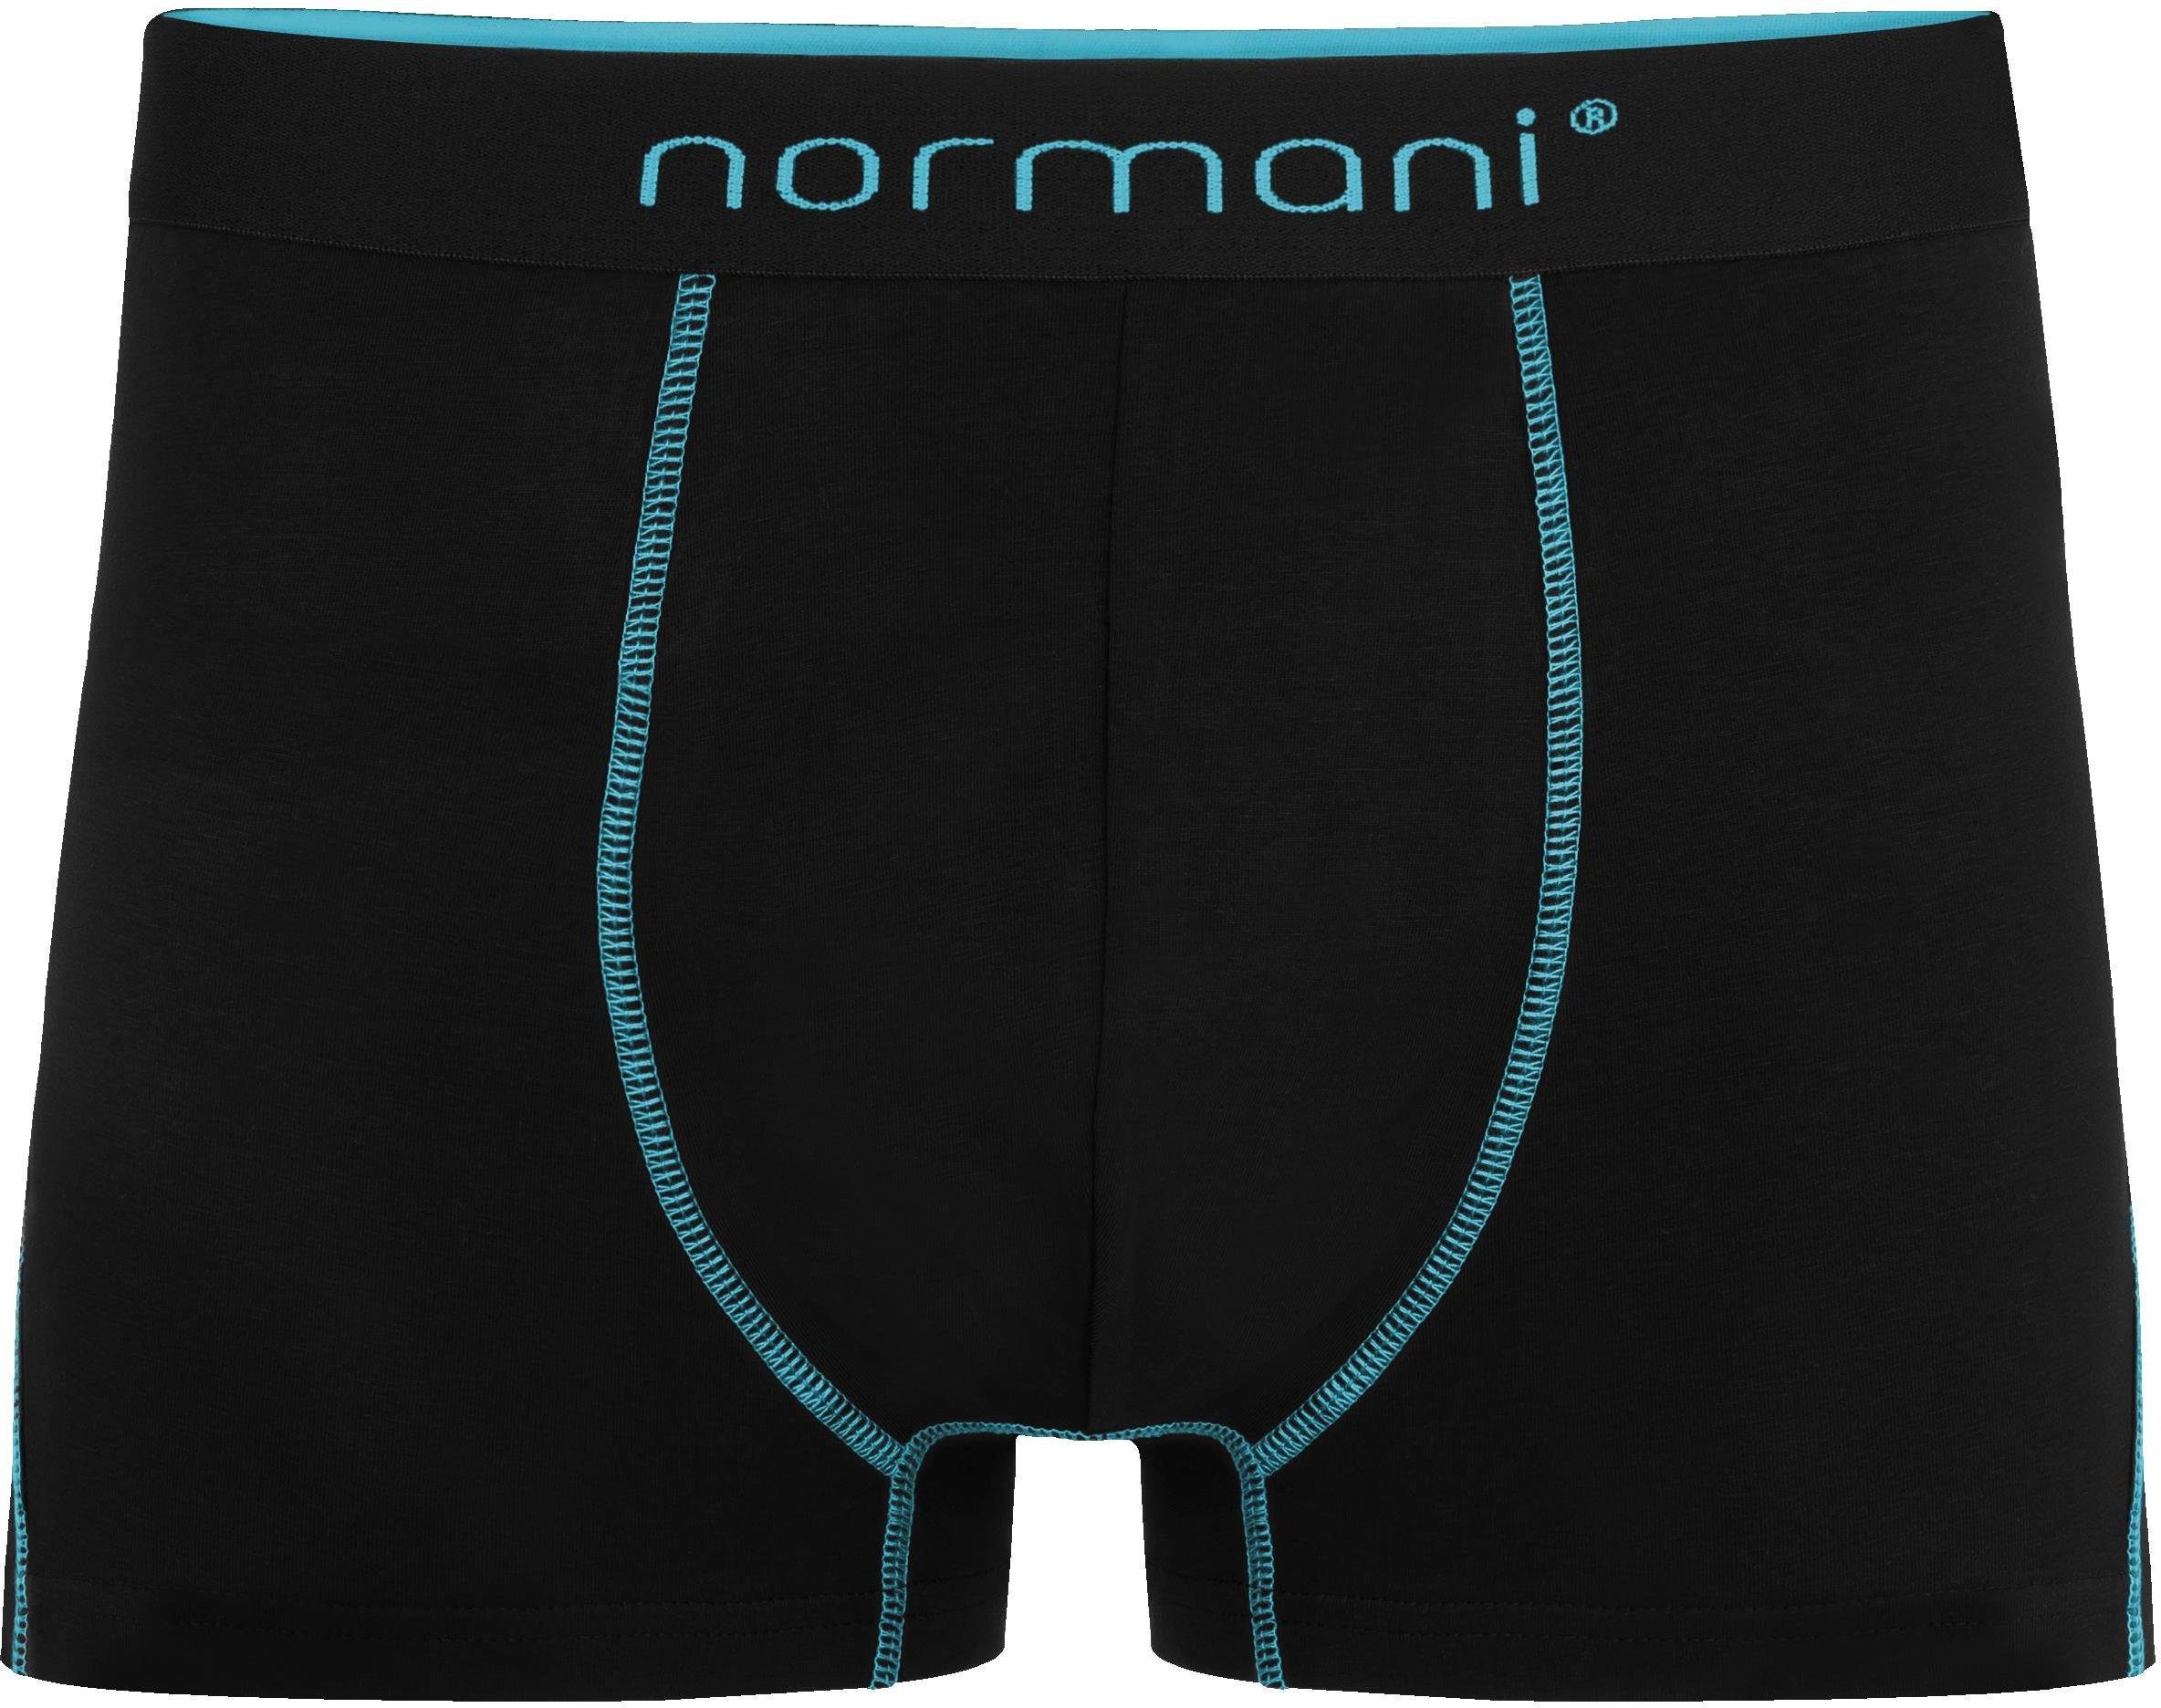 normani Boxershorts aus x Herren für atmungsaktiver Baumwolle 12 Türkis Baumwoll-Boxershorts Männer Unterhose